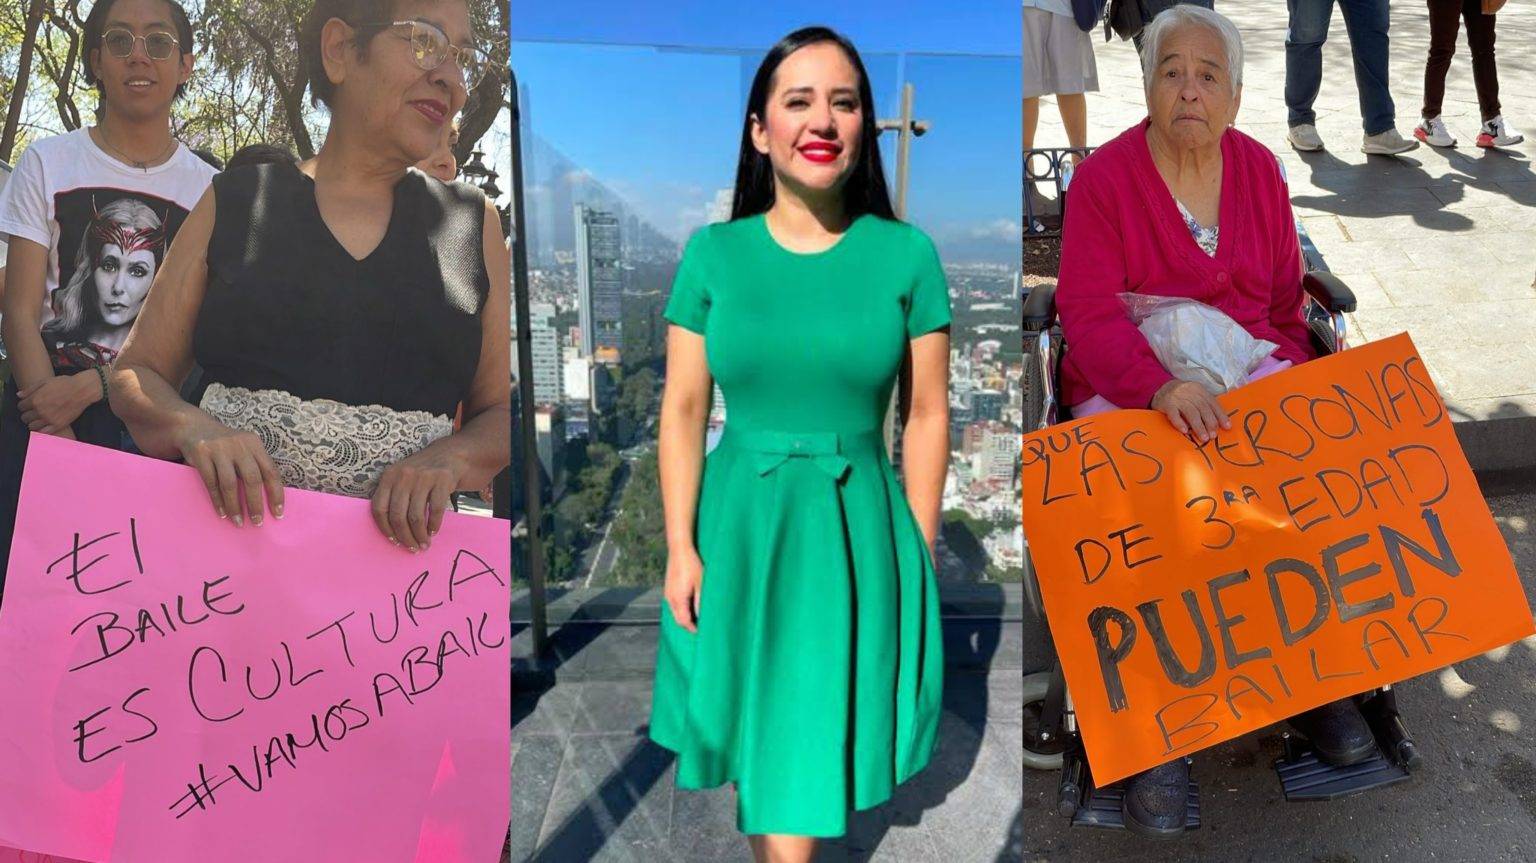 Video Prohibido Bailar Sandra Cuevas Reprime Manifestación De Adultos Mayores Regeneraciónmx